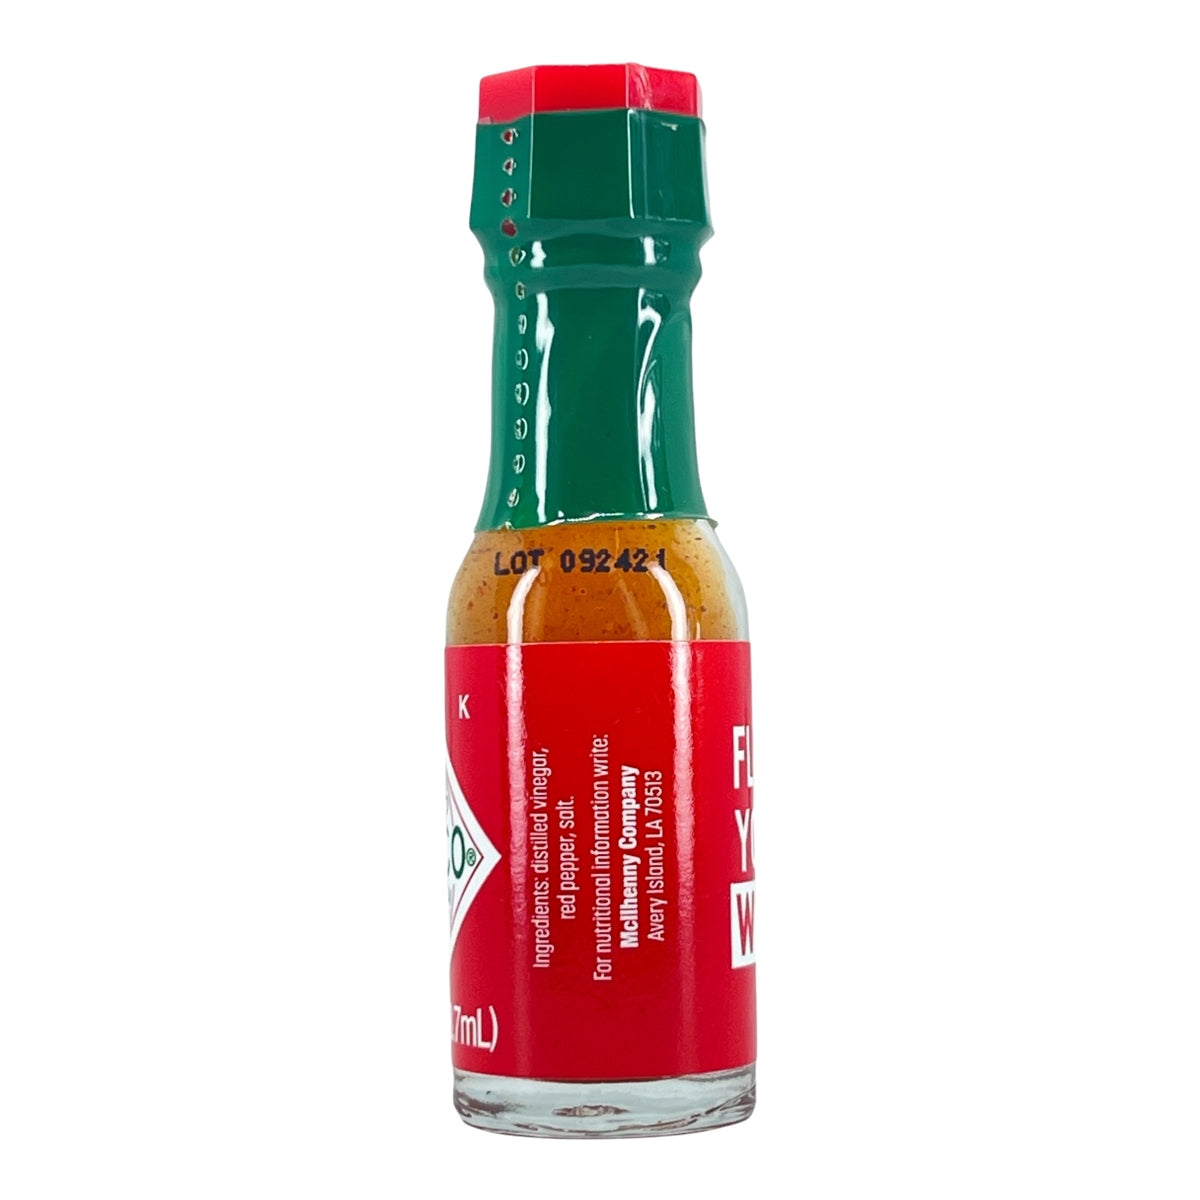 Condiment - 12 Tabasco Pepper Sauce Bottles (Red Bottle)